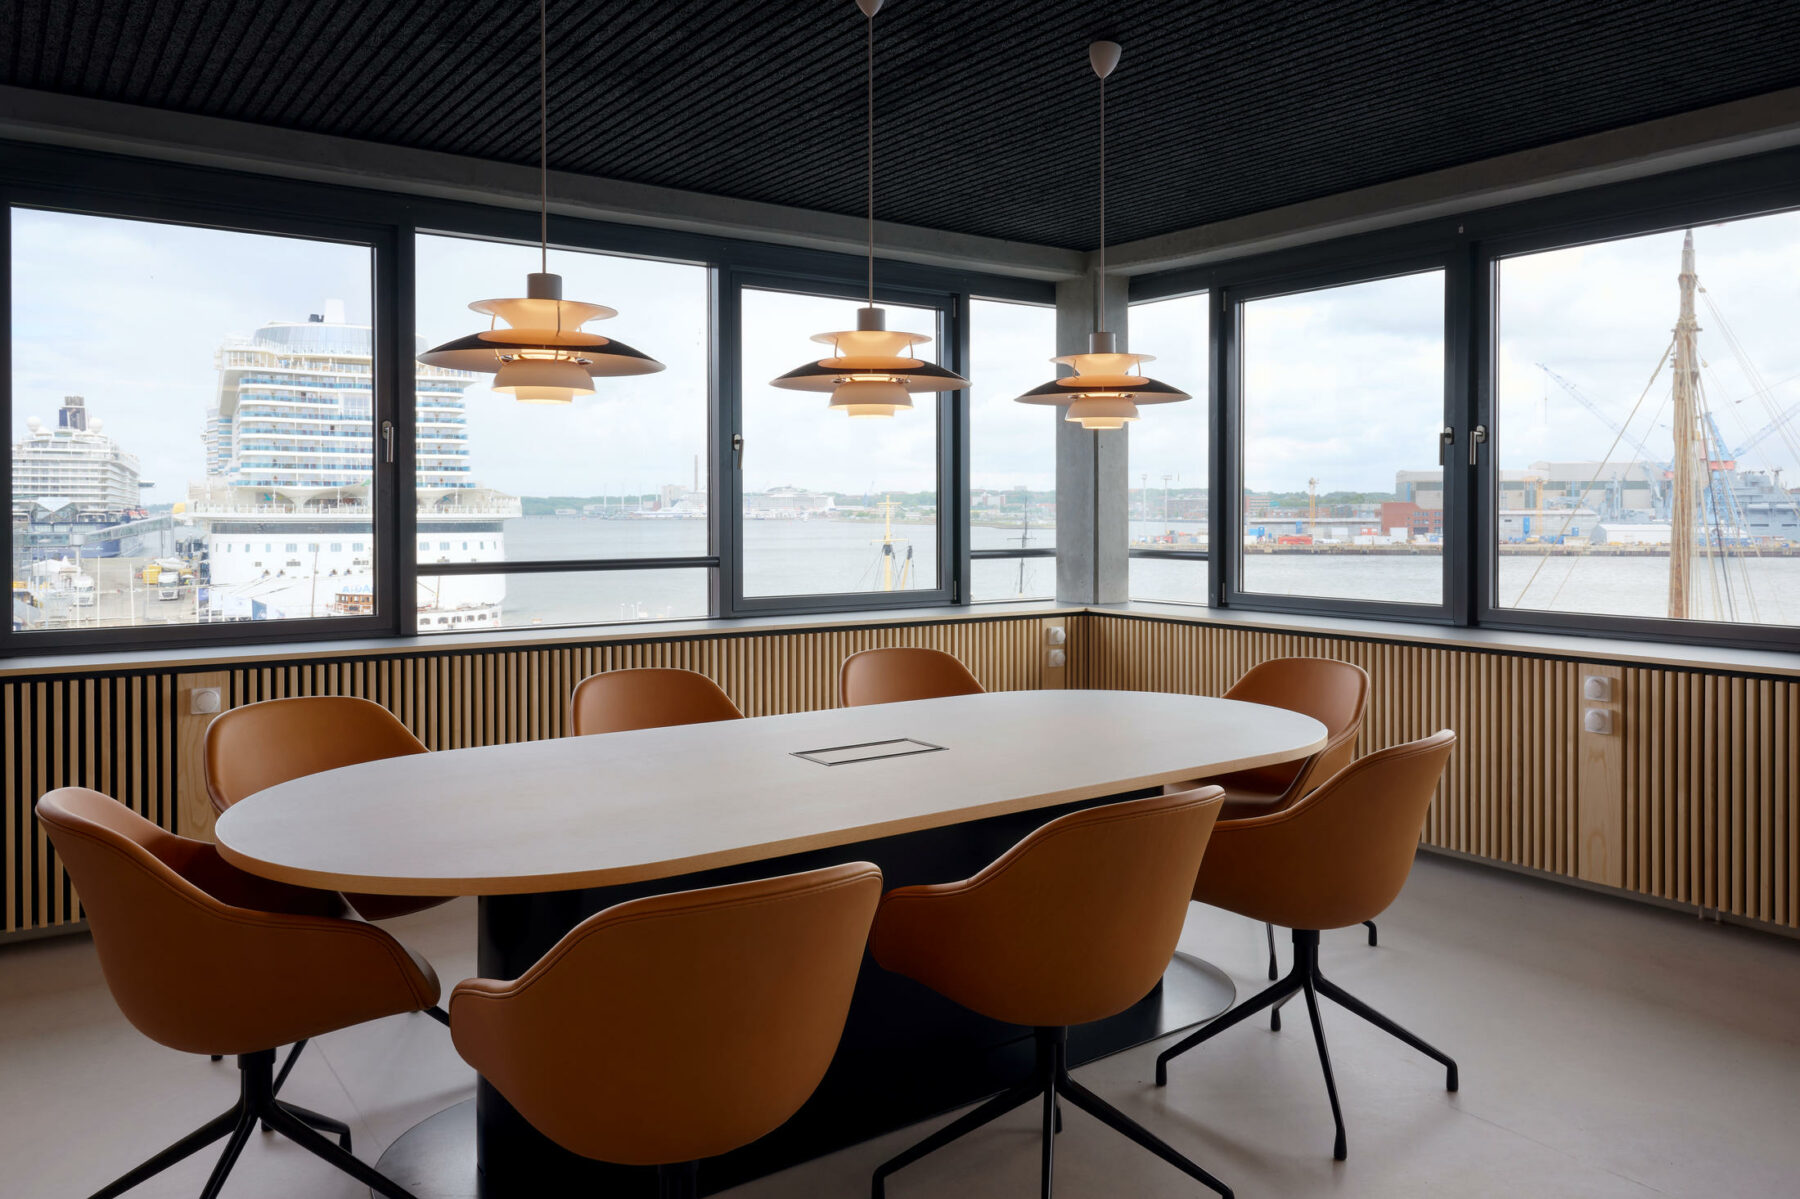 Beurkundungsraum mit speziell entworfenem Konferenztisch mit integriertem Kabelmanagement. Die Heizkörperverkleidungen mit Eschenholzstäben ziehen sich als Band durch die gesamte Etage.